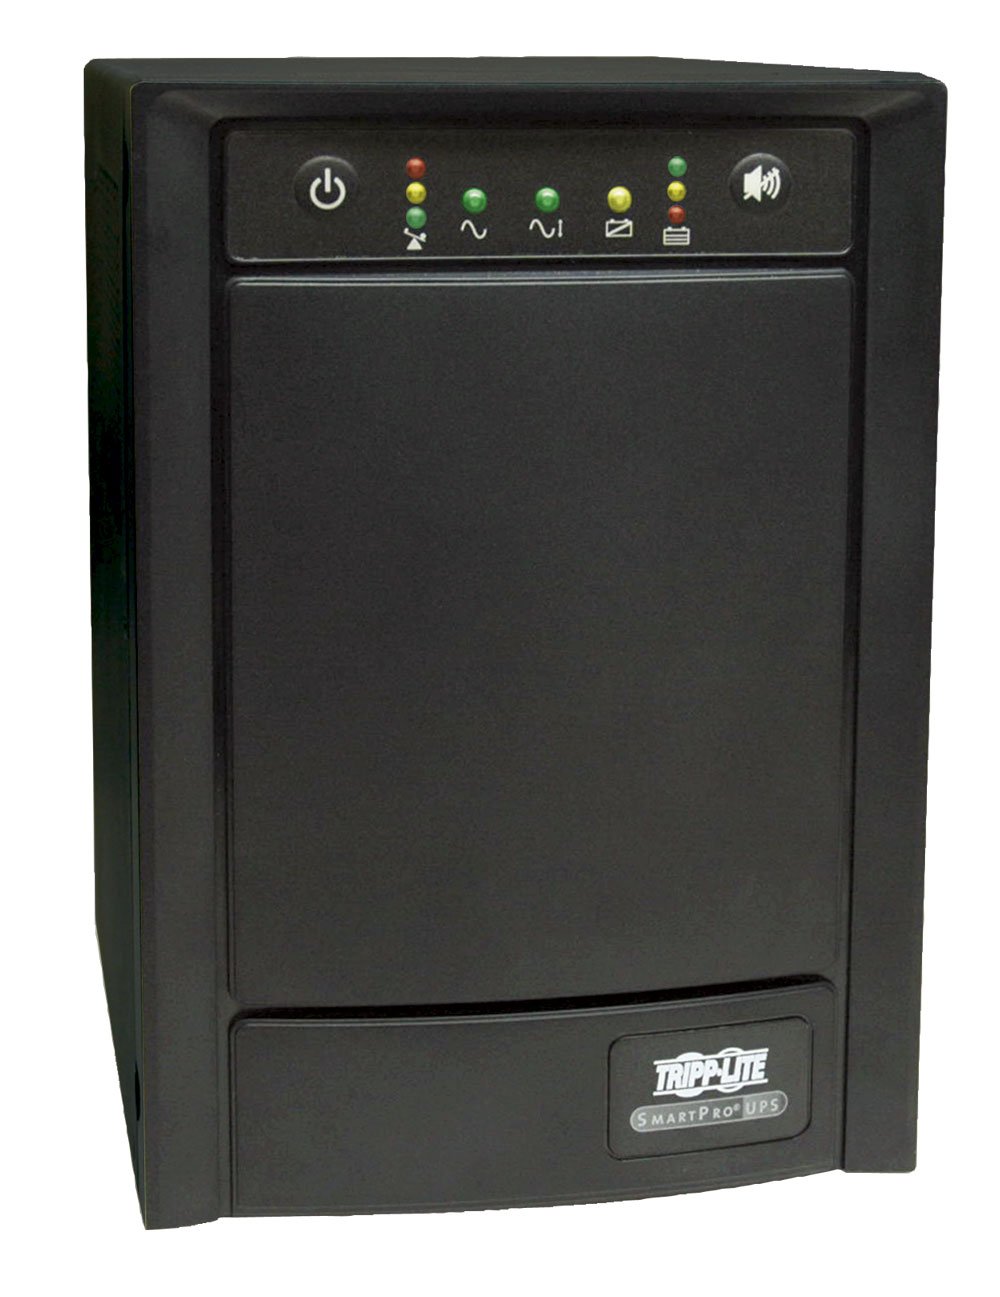 Tripp Lite SMART1500SLT 1500VA 900W UPS Smart Tower AVR 120V USB DB9 SNMP for Servers, 8 Outlets